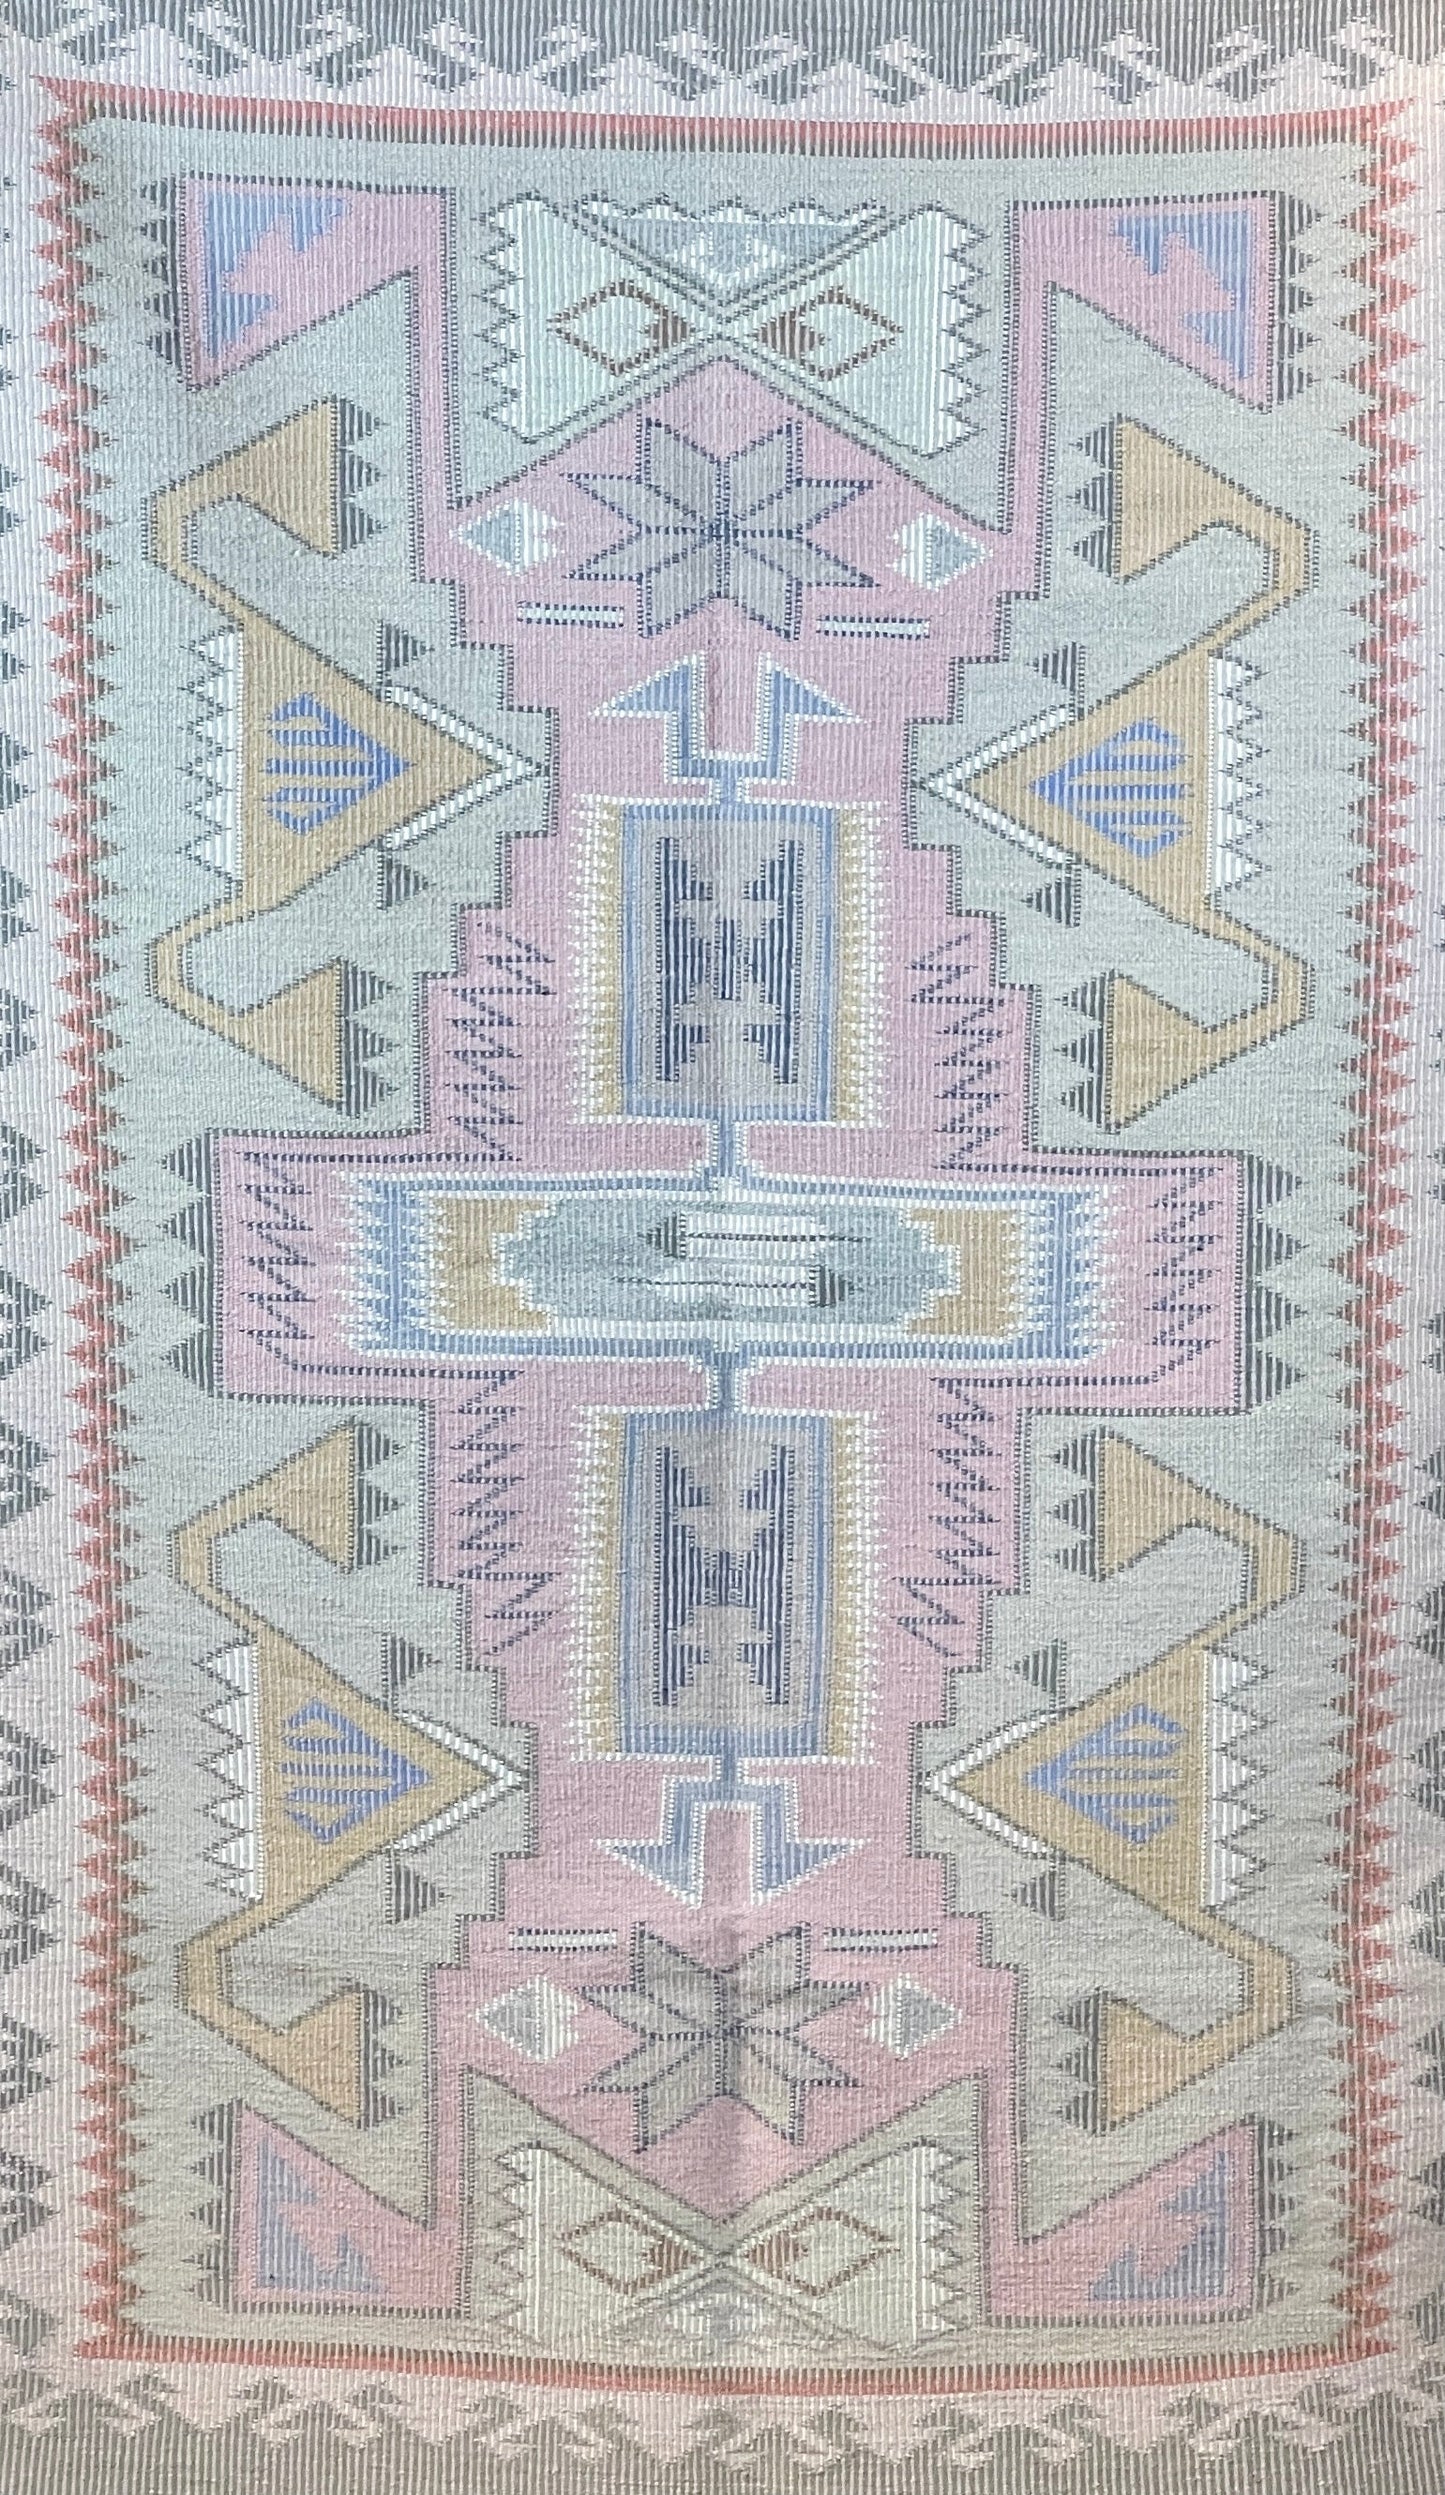 Raised Outline Weaving by Louise Shepherd-Weaving-Navajo Weaving-Sorrel Sky Gallery